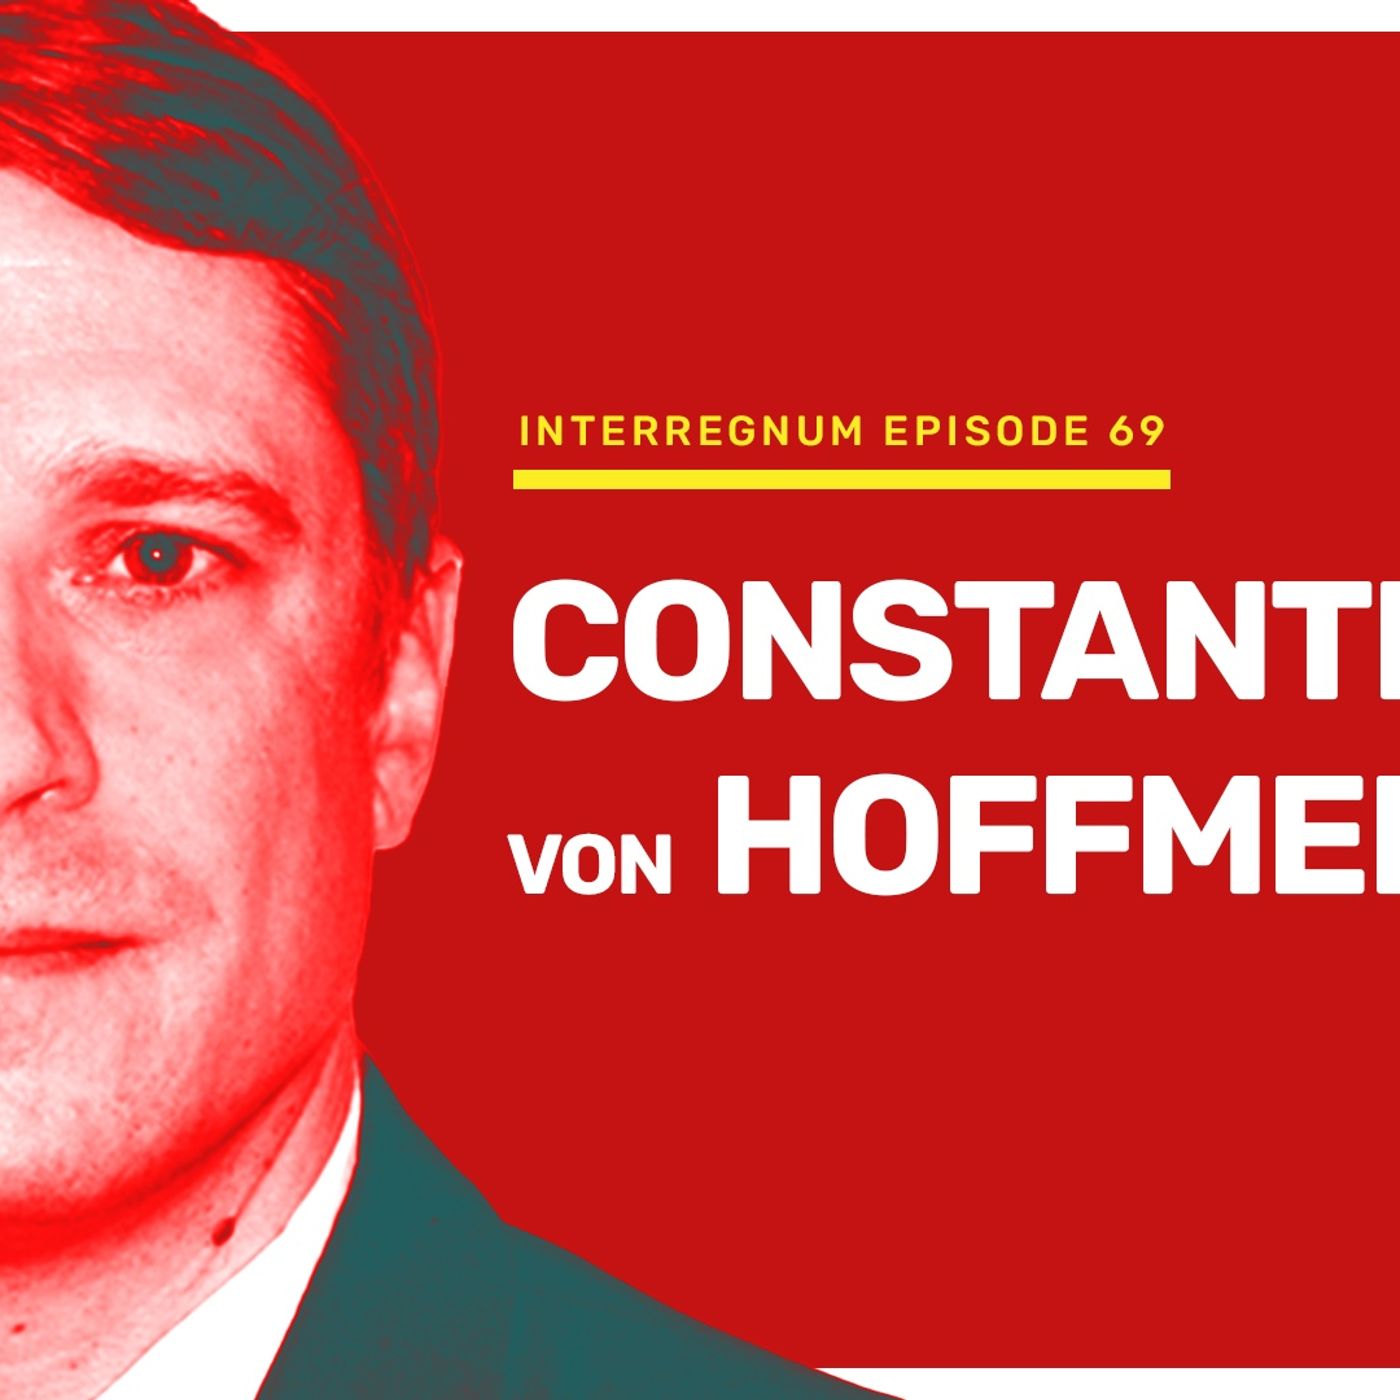 Constantin von Hoffmeister